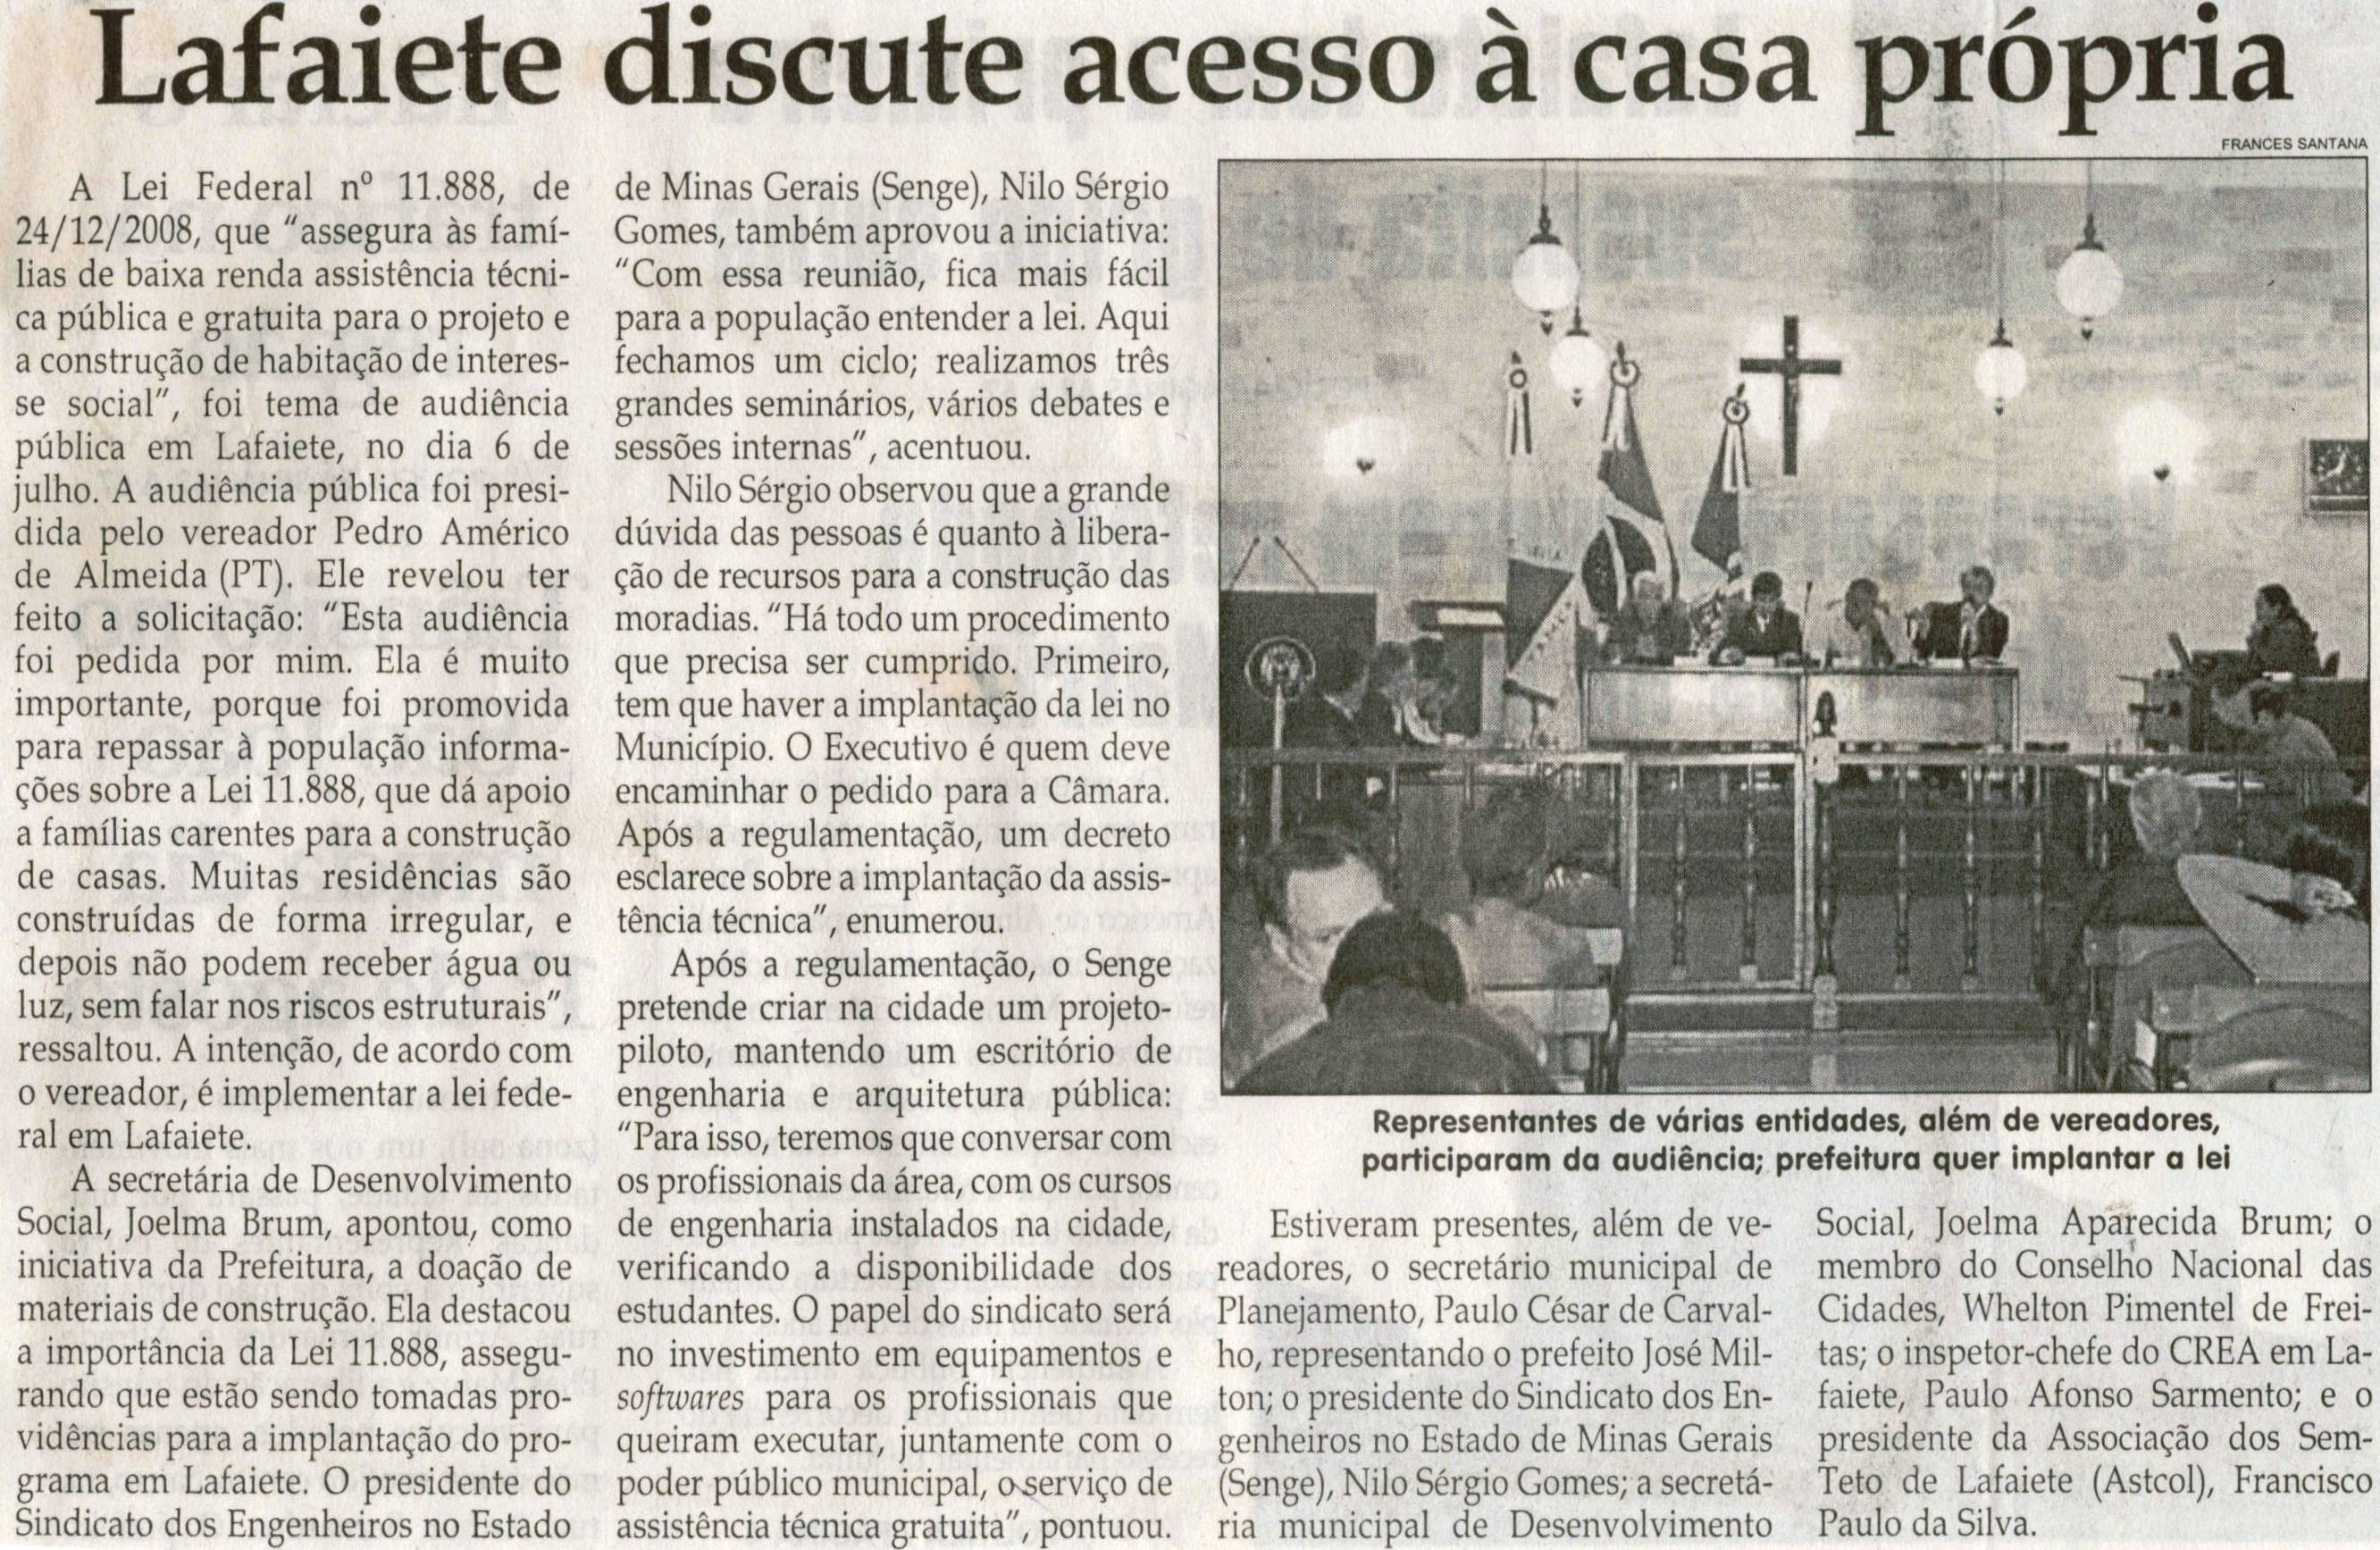 Lafaiete discute acesso à casa própria. Jornal Correio da Cidade, Conselheiro Lafaiete, 18 jul. 2009, p. 02.